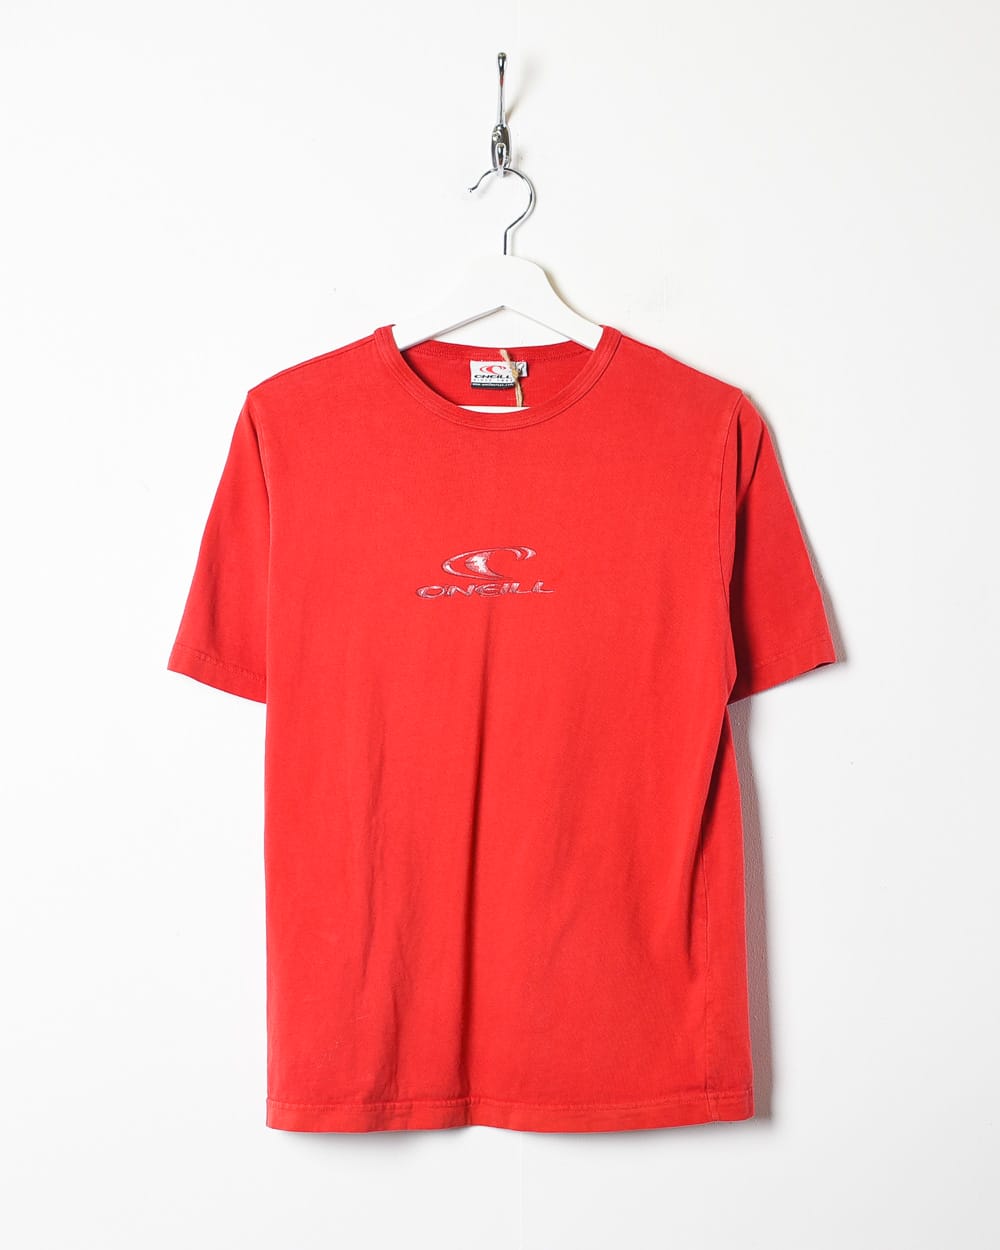 Red O'Neill T-Shirt - Medium